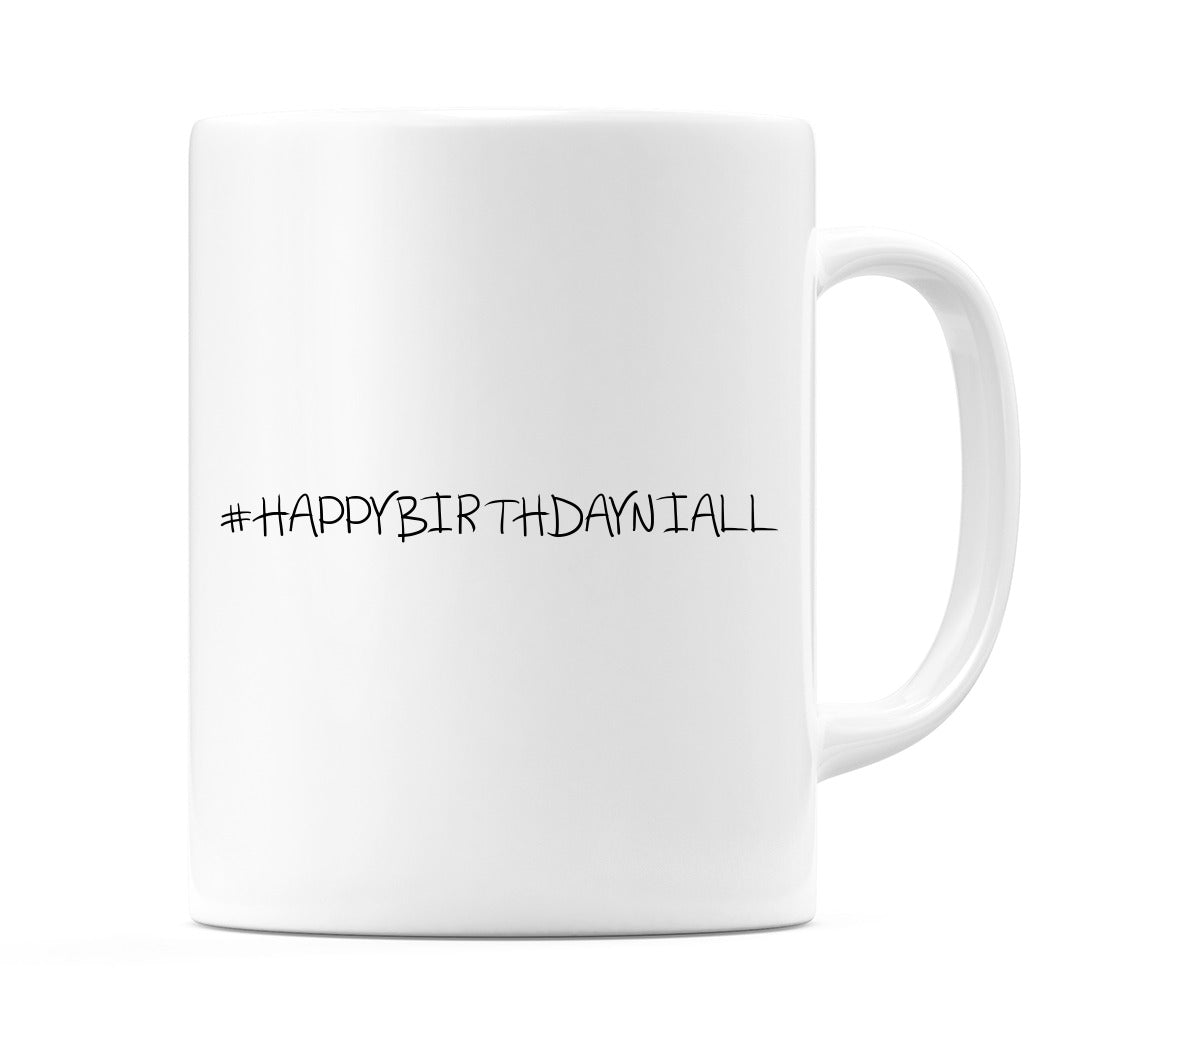 #HAPPYBIRTHDAYNIALL Mug